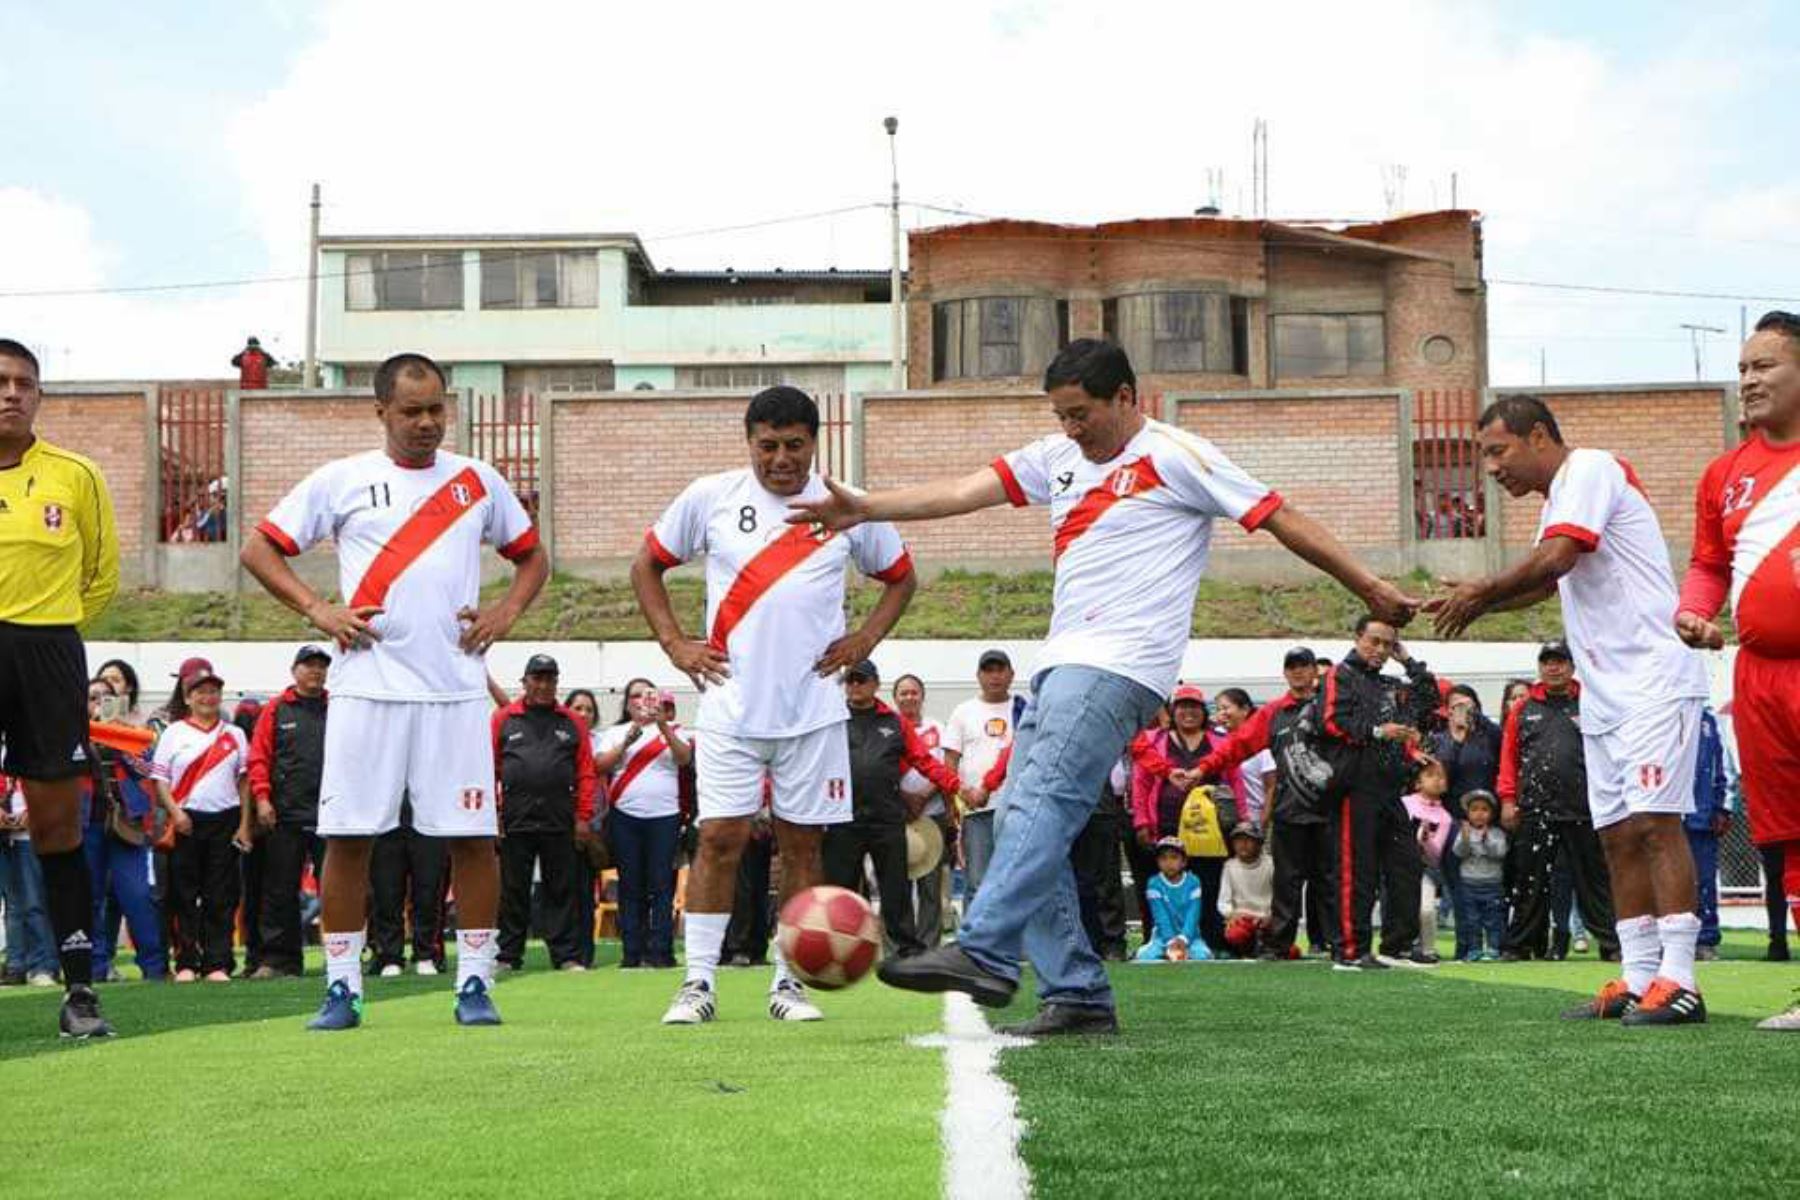 Cerca de 2,000 personas de todas las edades vivieron una fiesta deportiva en la inauguración del estadio municipal del distrito de El Tambo que lleva el nombre del capitán de la selección nacional de fútbol, Paolo Guerrero. ANDINA/Pedro Tinoco